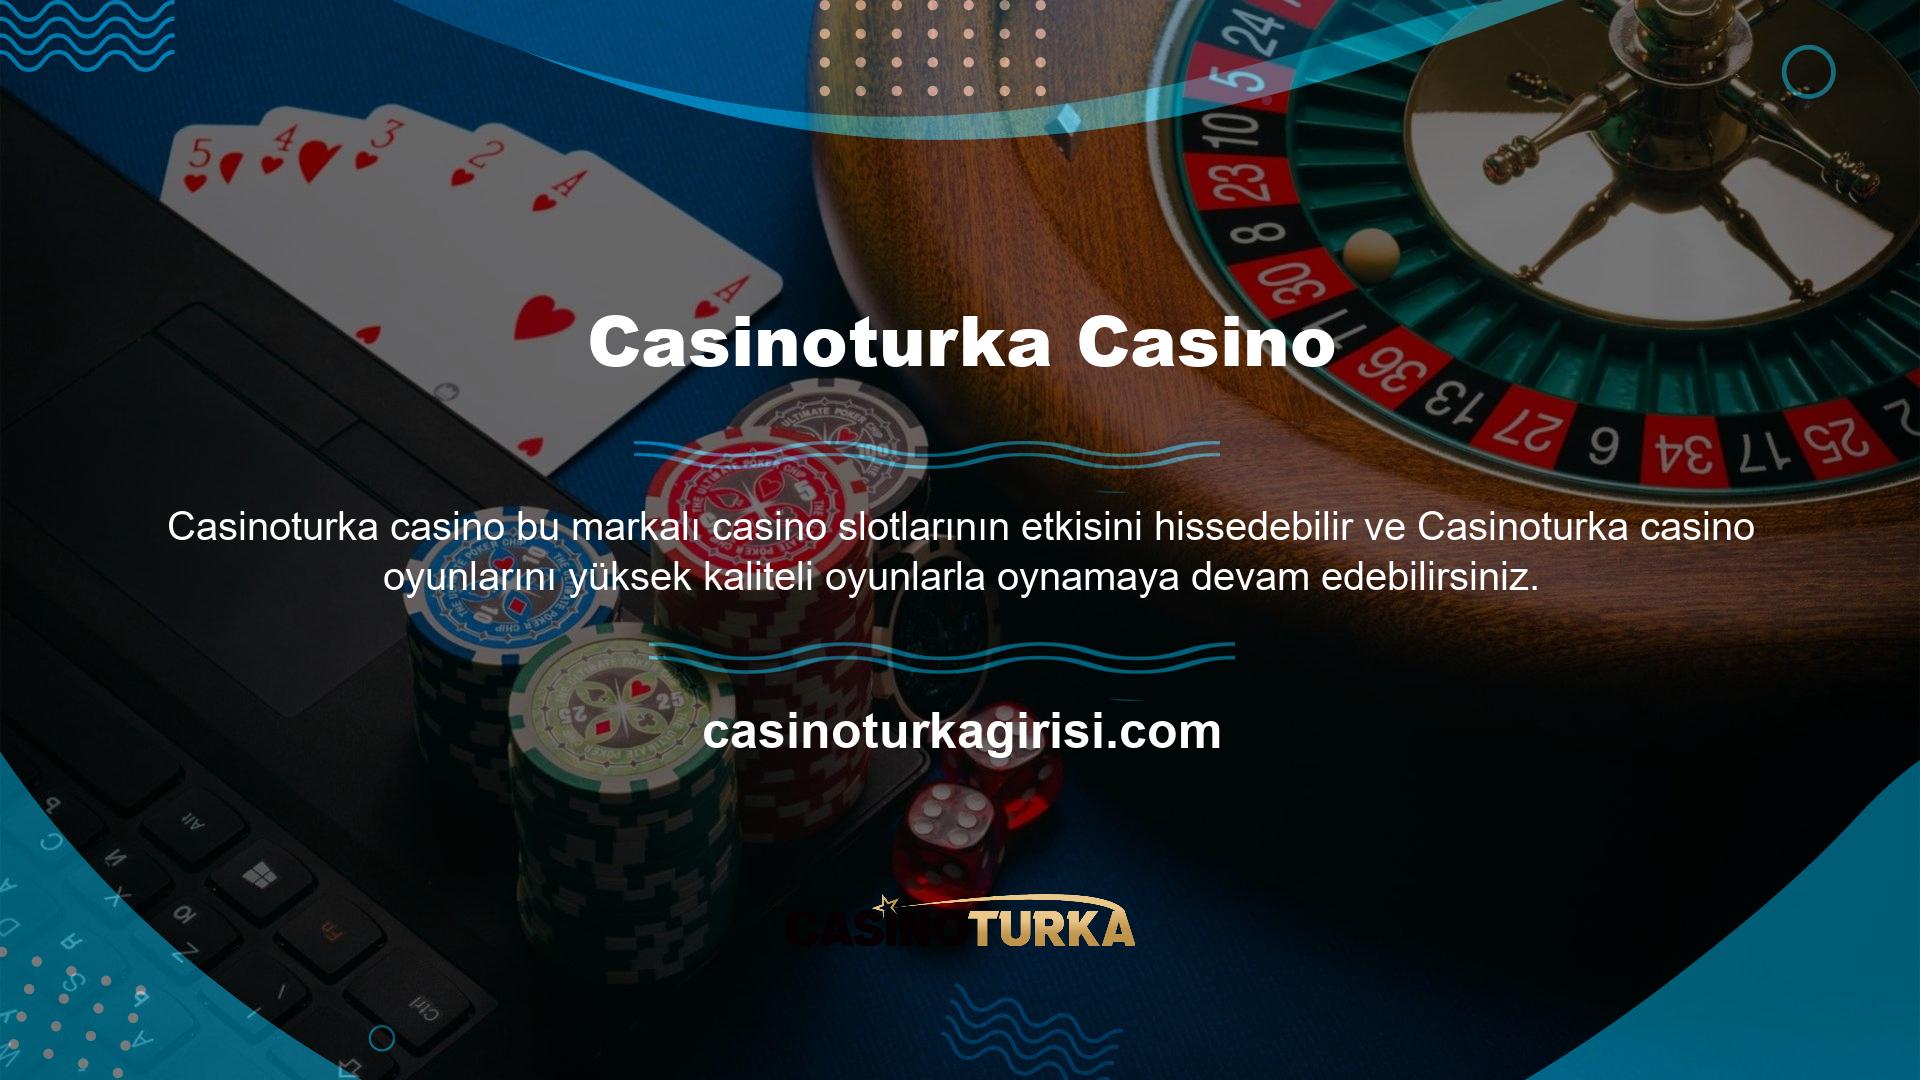 Casinoturka canlı bahis hizmeti çok çeşitli bahis seçenekleri sunmaktadır